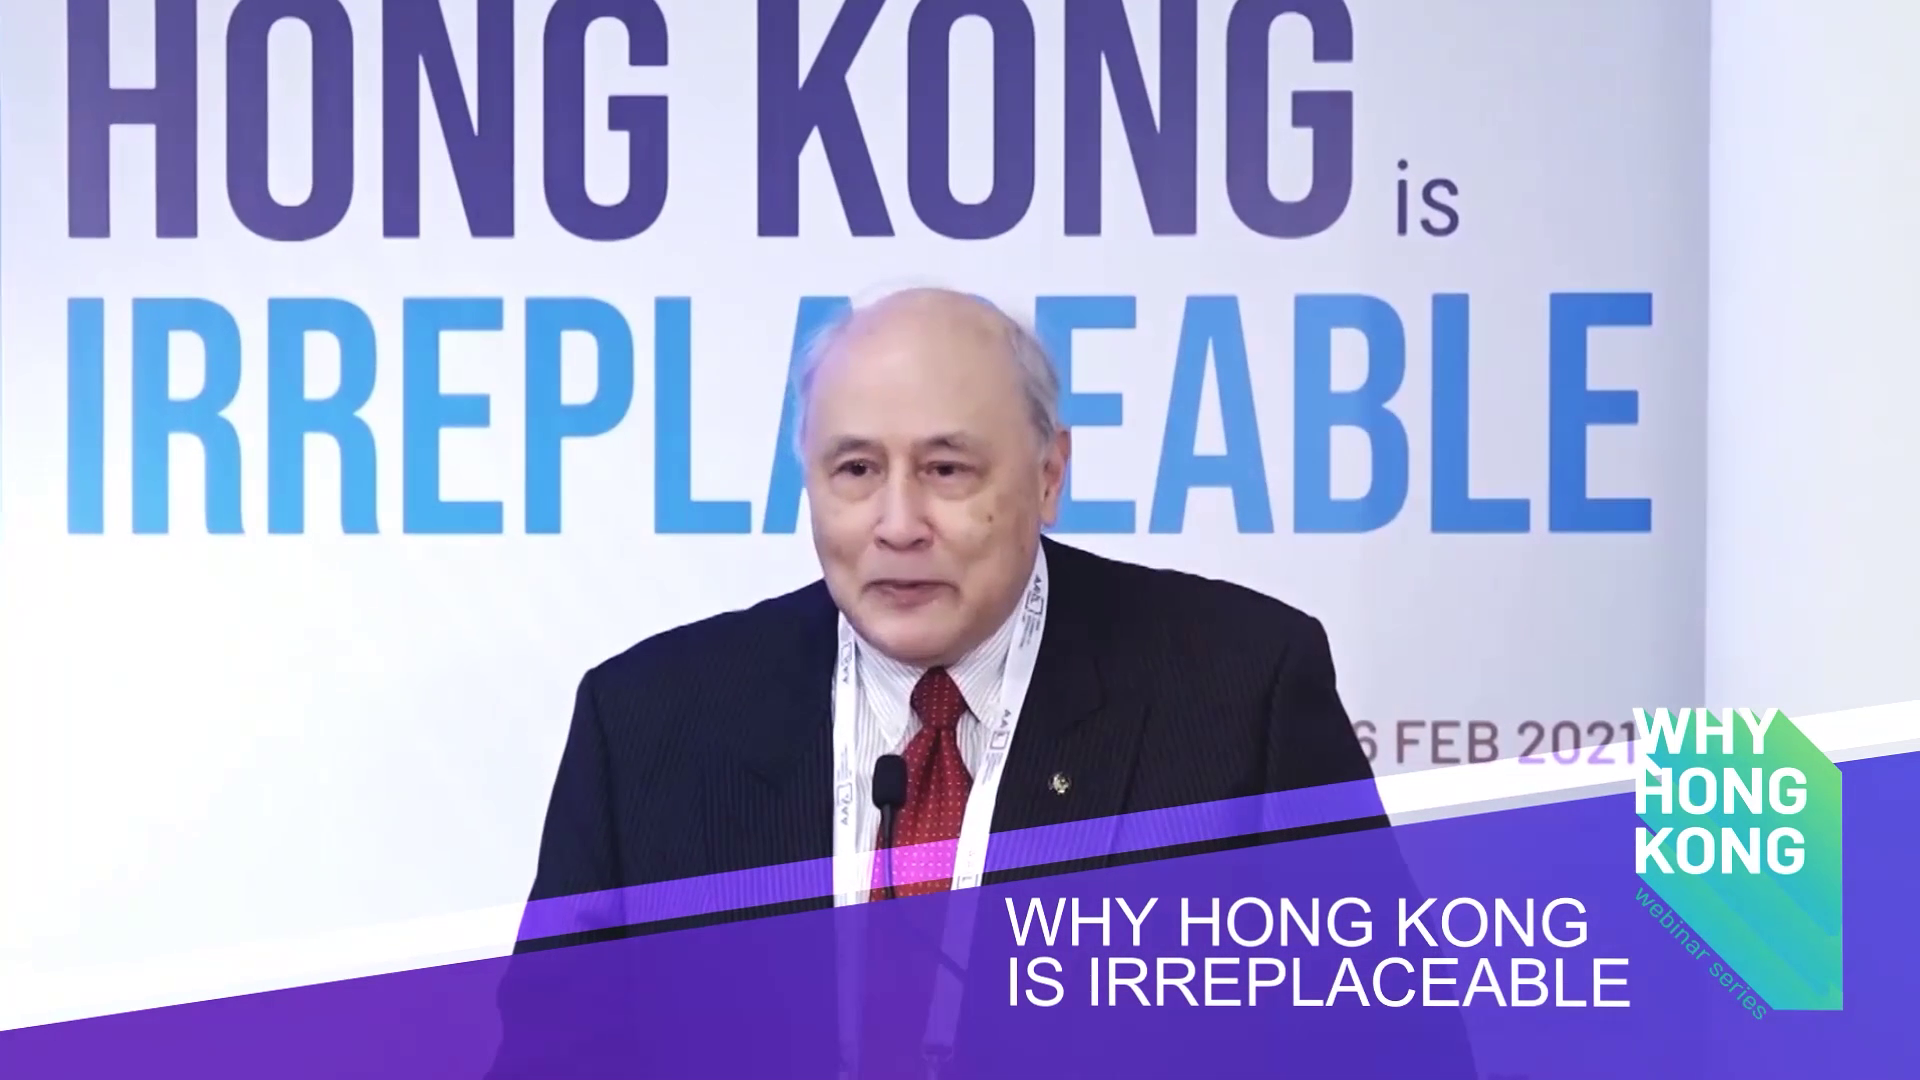 Webinar on “Why HK is irreplaceable”